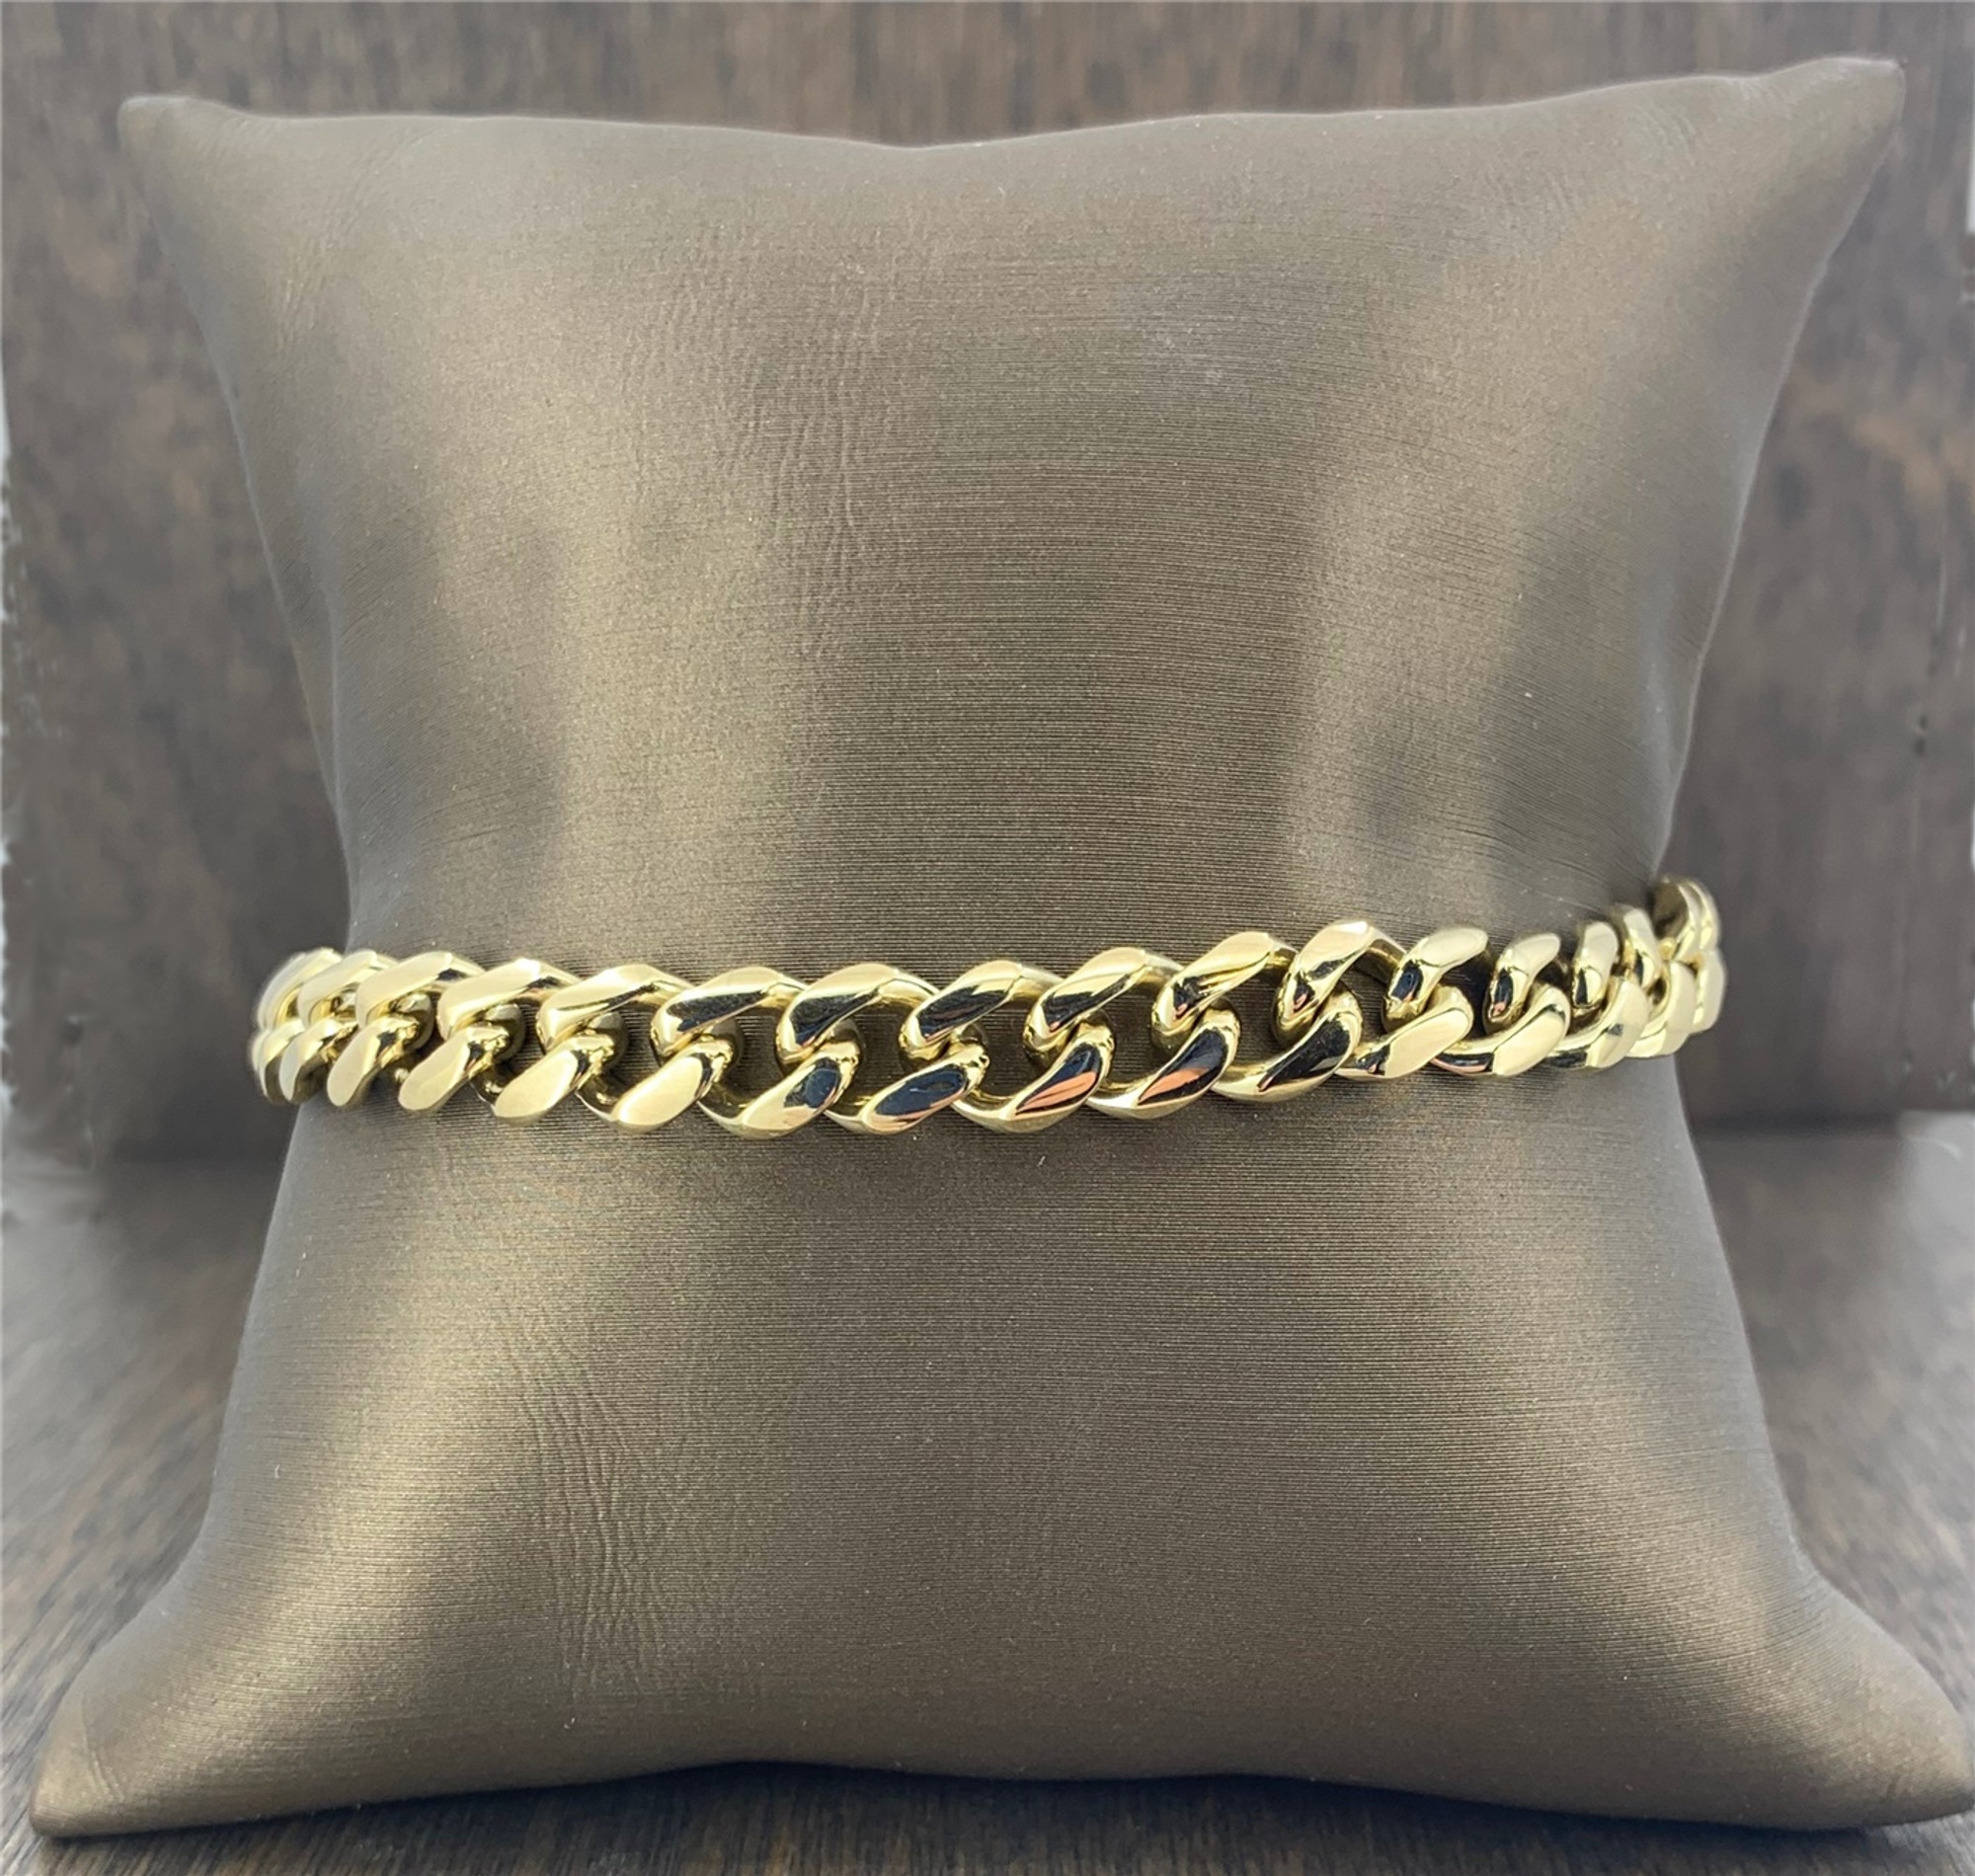 14k Gold Chain Link Bracelet – Vintage by Misty